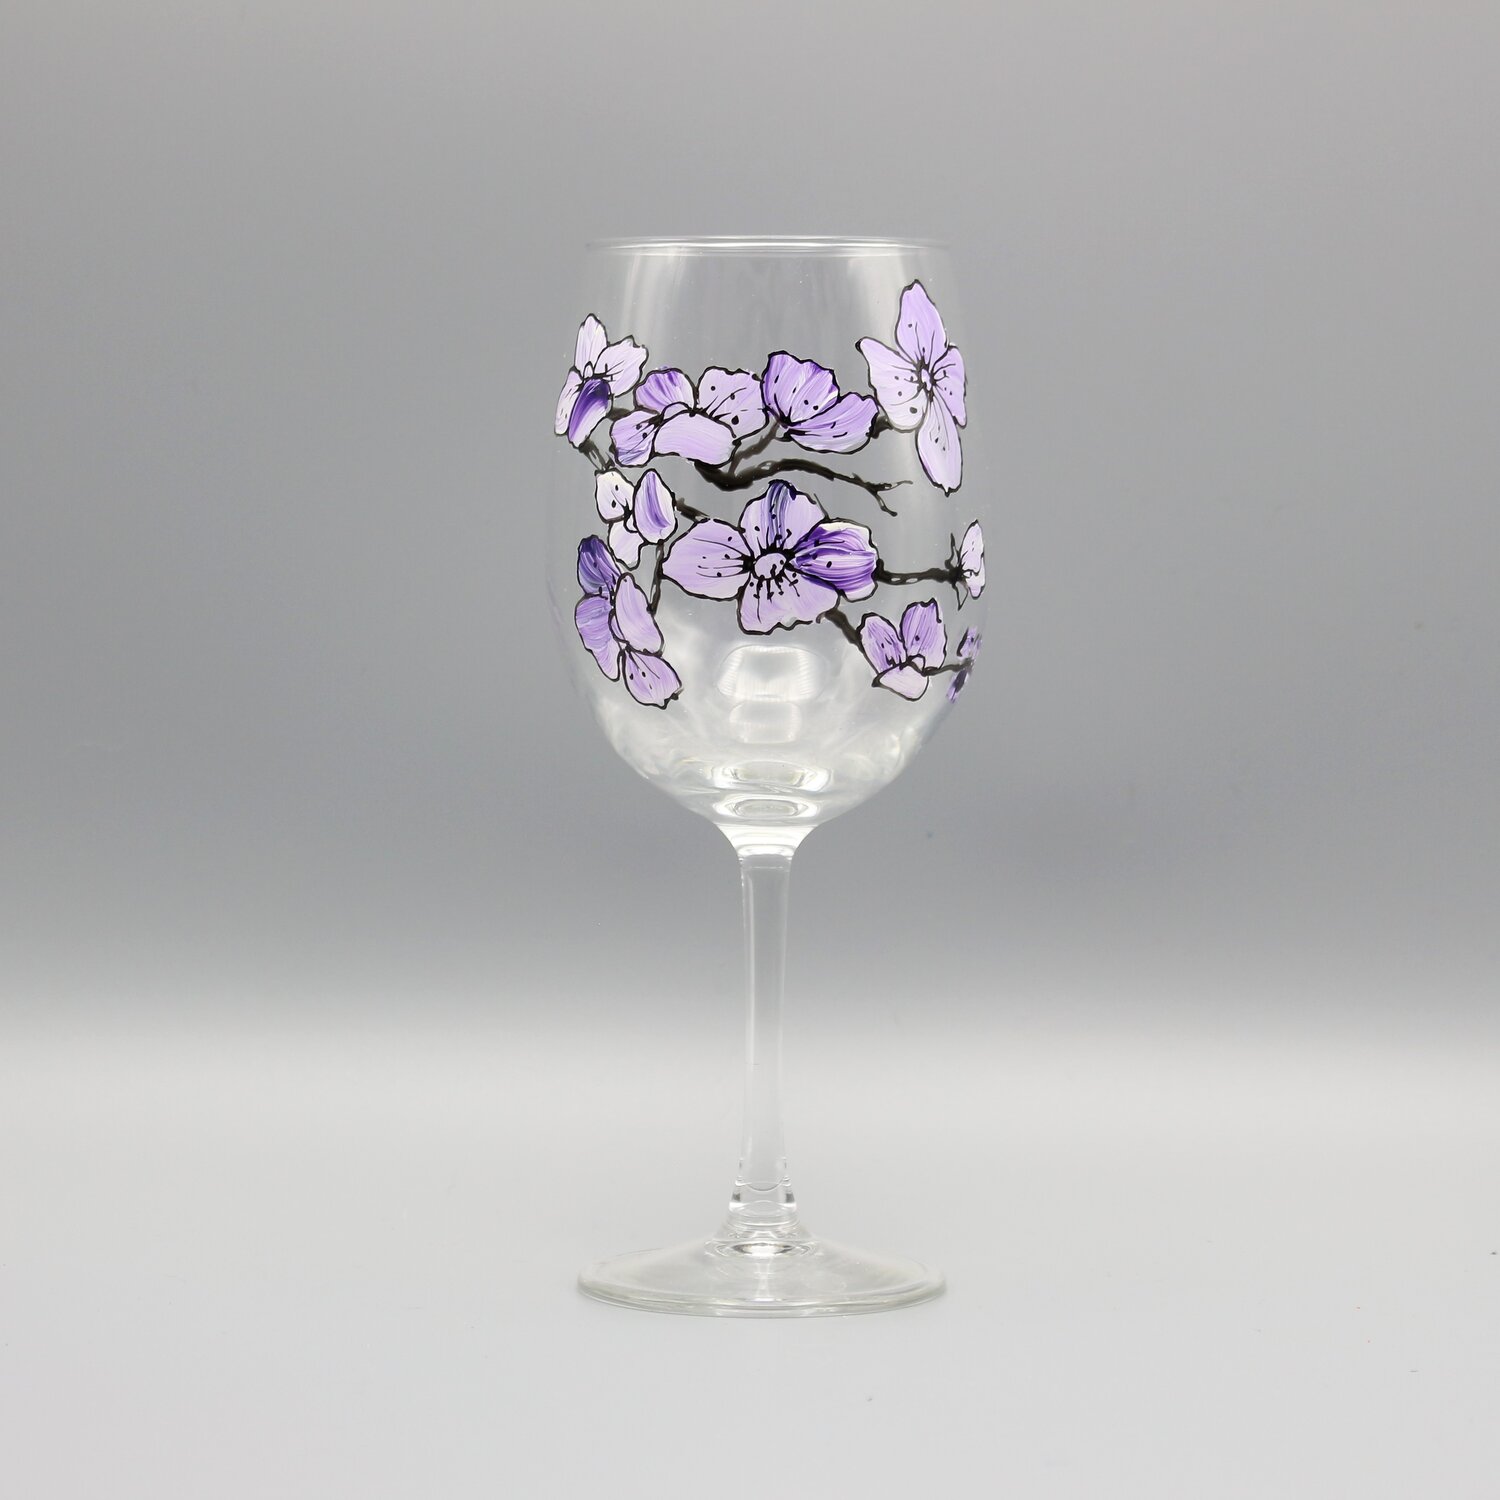 https://images.squarespace-cdn.com/content/v1/5570dc78e4b0bbe8e5cab3d0/1580196540391-D816I3BXIAS8WQRWOPZ1/cherry_blossom_wine_glass_purple.JPG?format=1500w